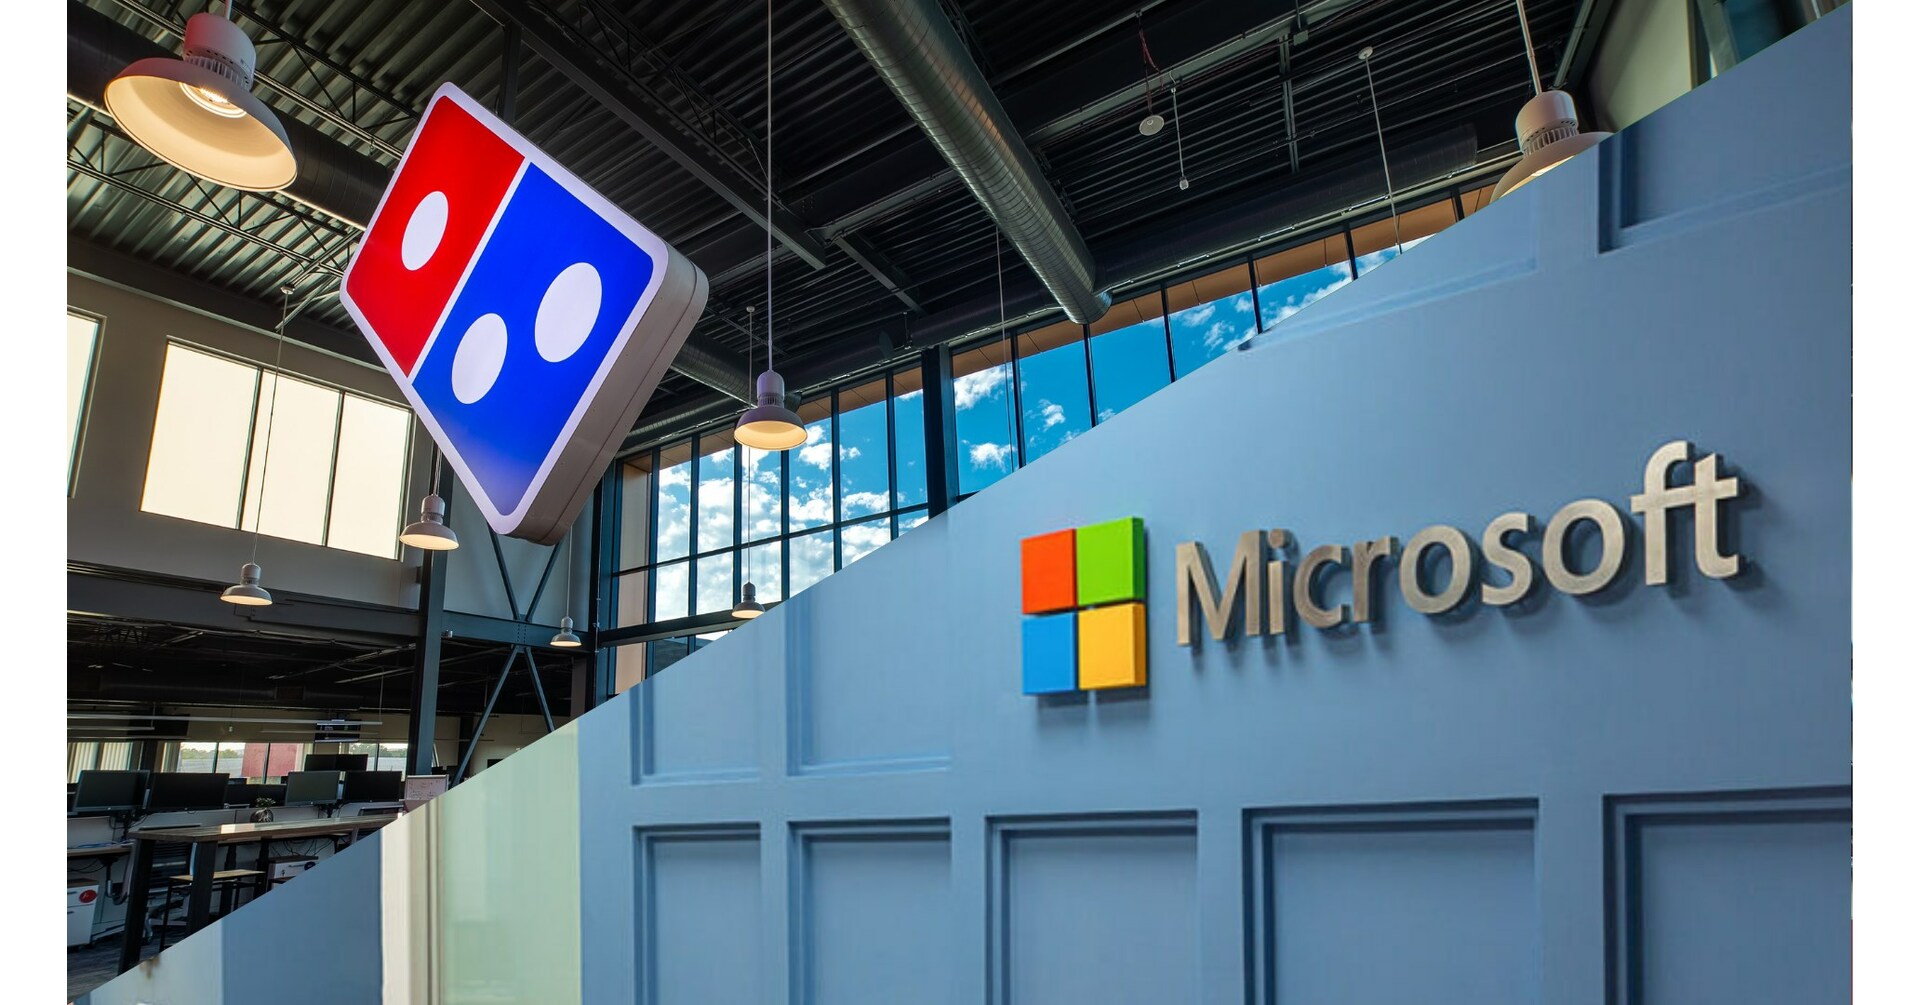 Domino’s® и Microsoft объединились, чтобы создать инновационный альянс на основе искусственного интеллекта для более разумных заказов пиццы и оптимизации операций.